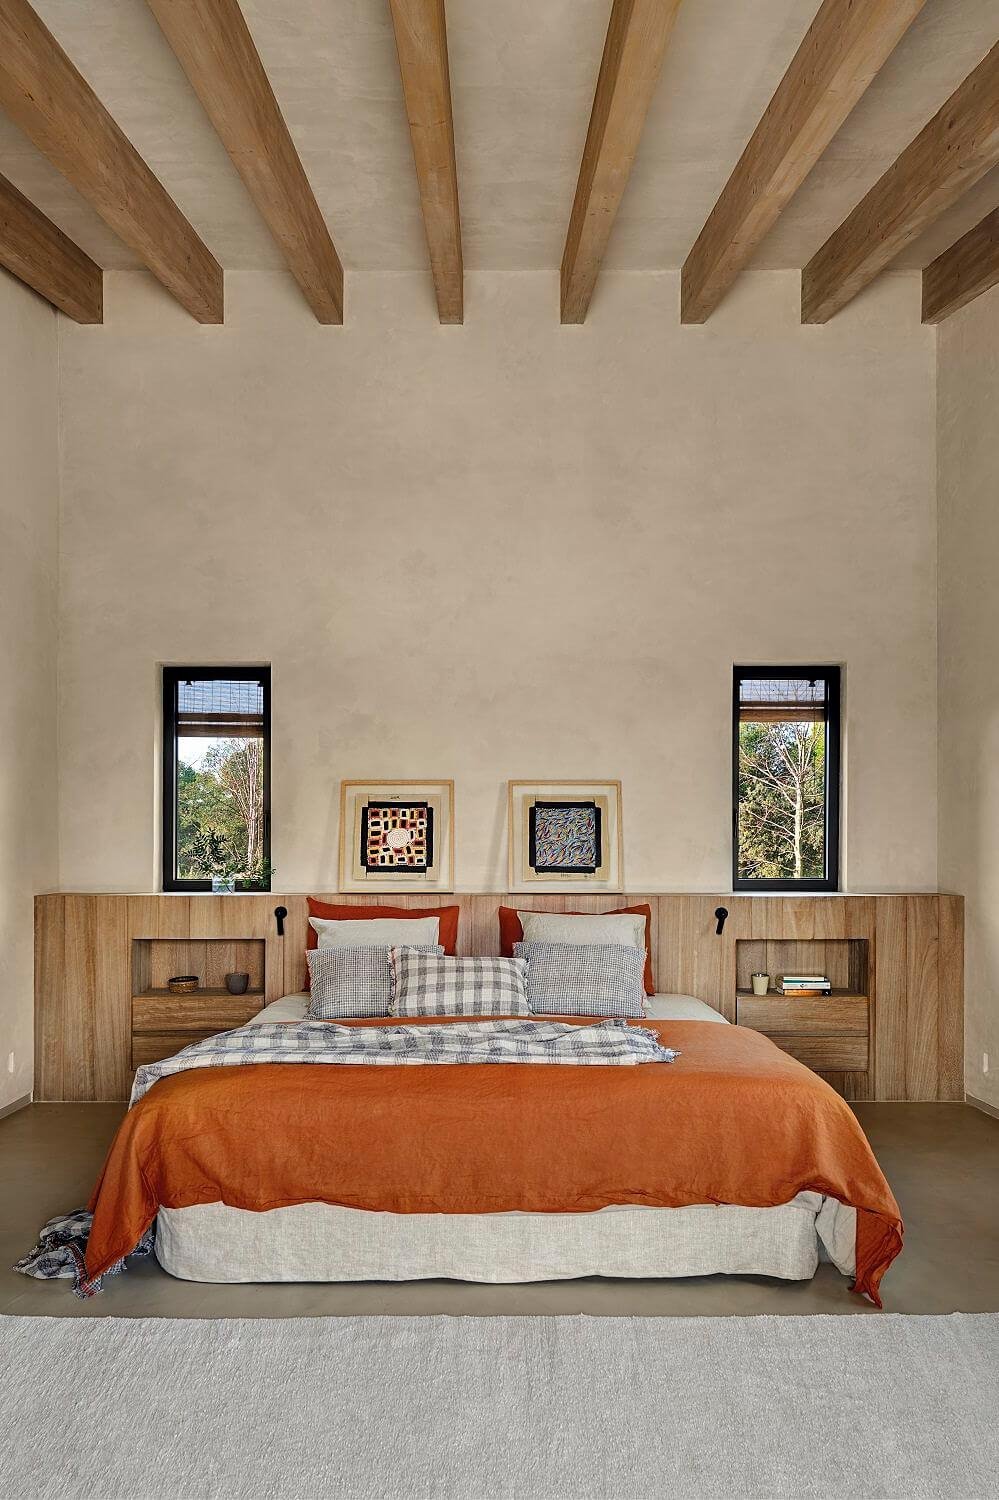 La cama es el punto focal del dormitorio. Darle calidez y textura ayudará a crear un ambiente muy especial.